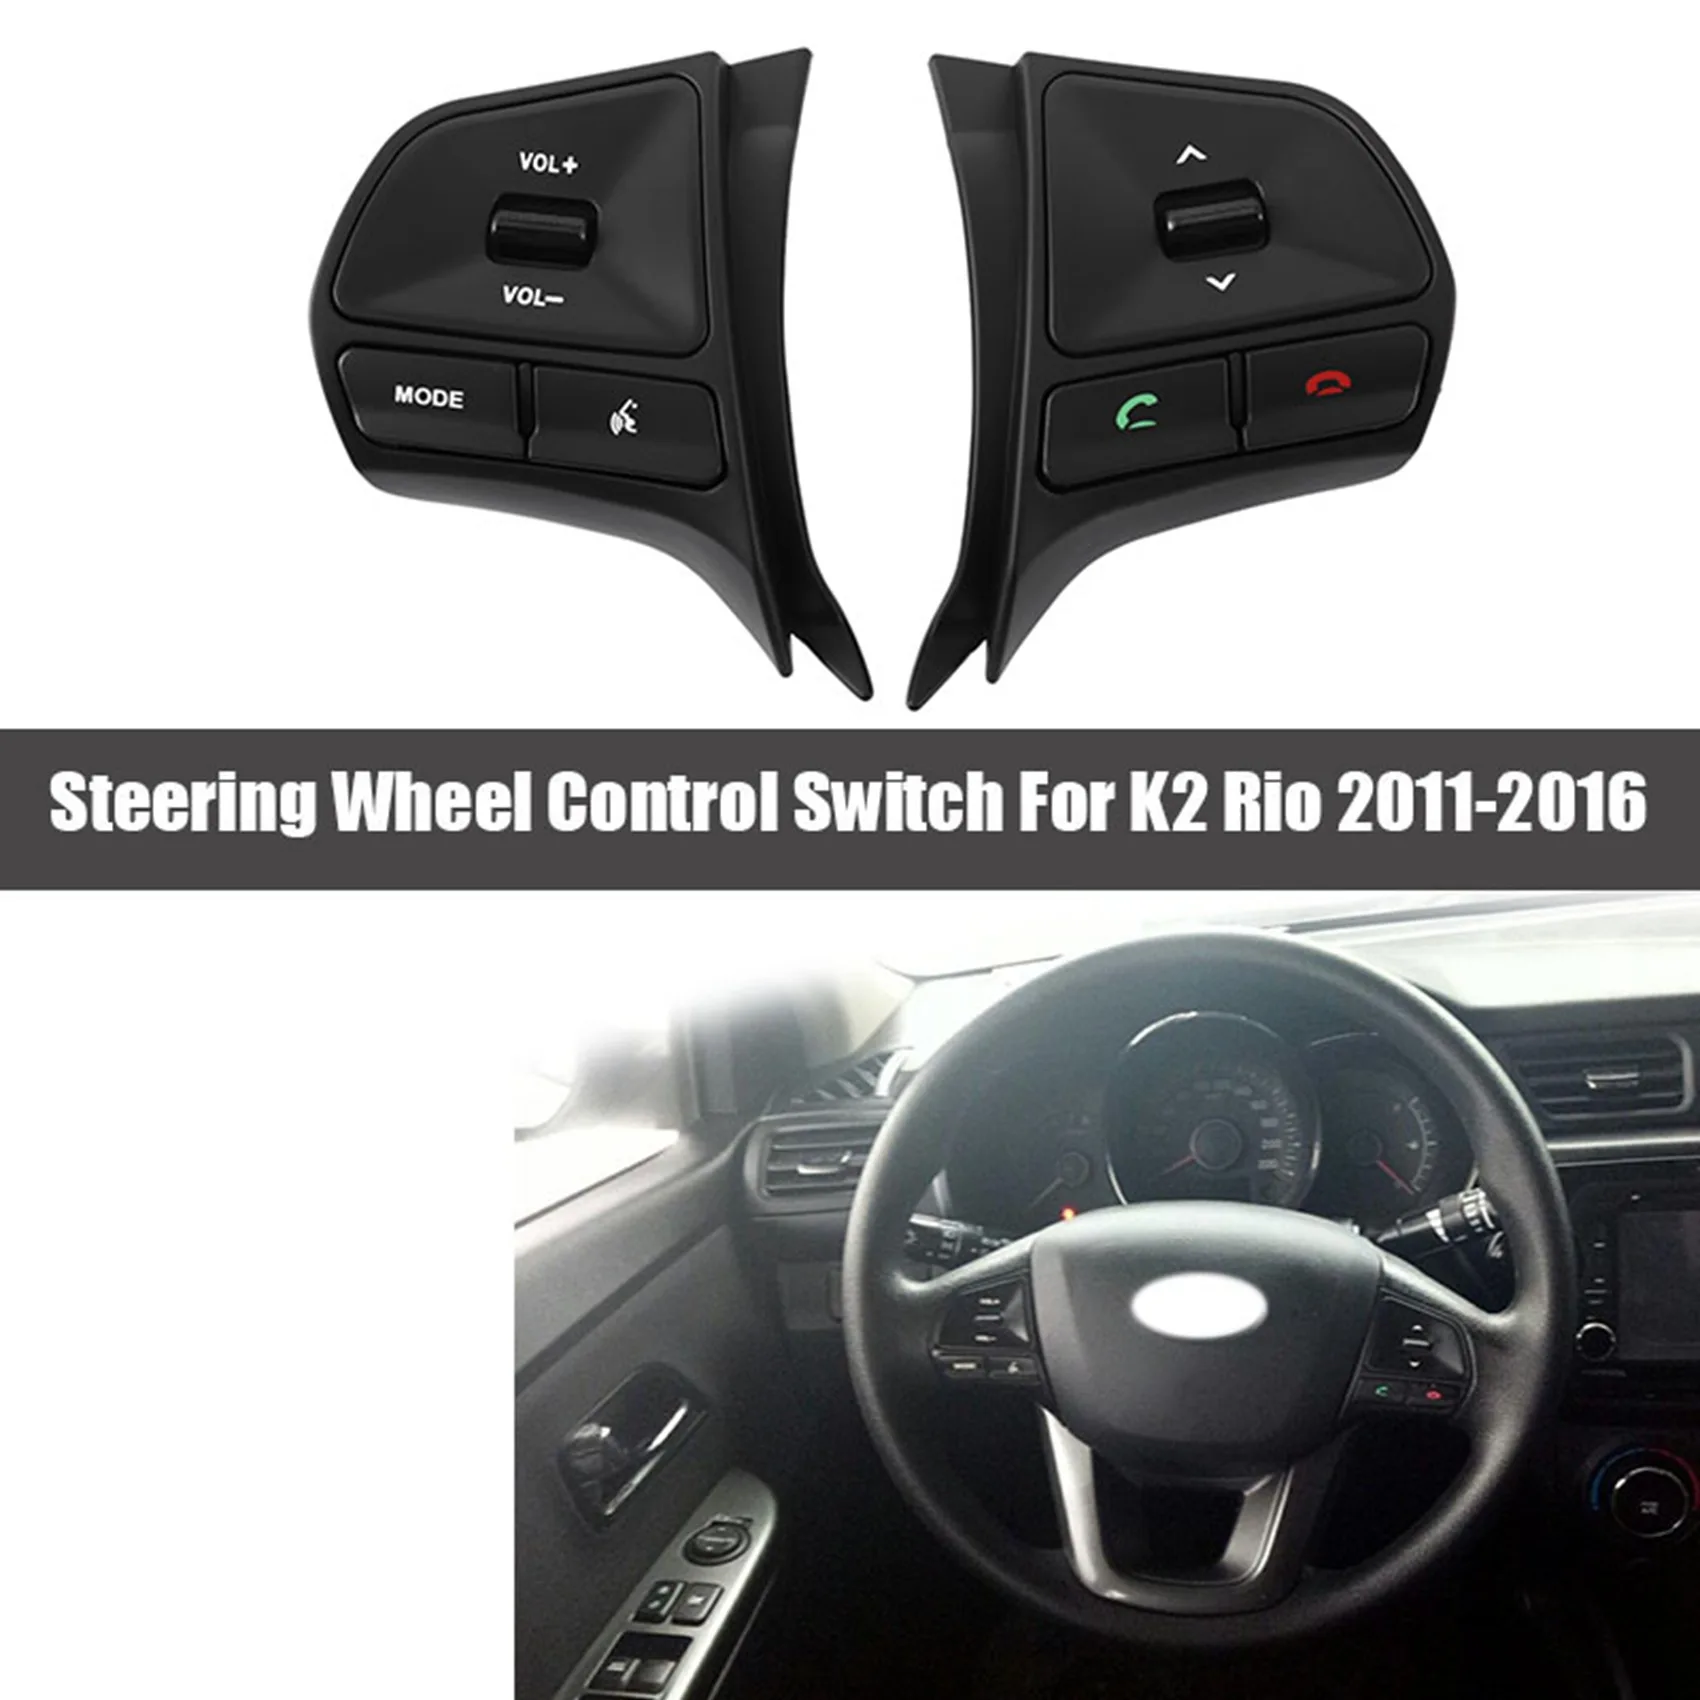 

Автомобильная Многофункциональная кнопка рулевого колеса для управления звуком и Bluetooth для KIA K2 Rio НОВИНКА 2011-2016